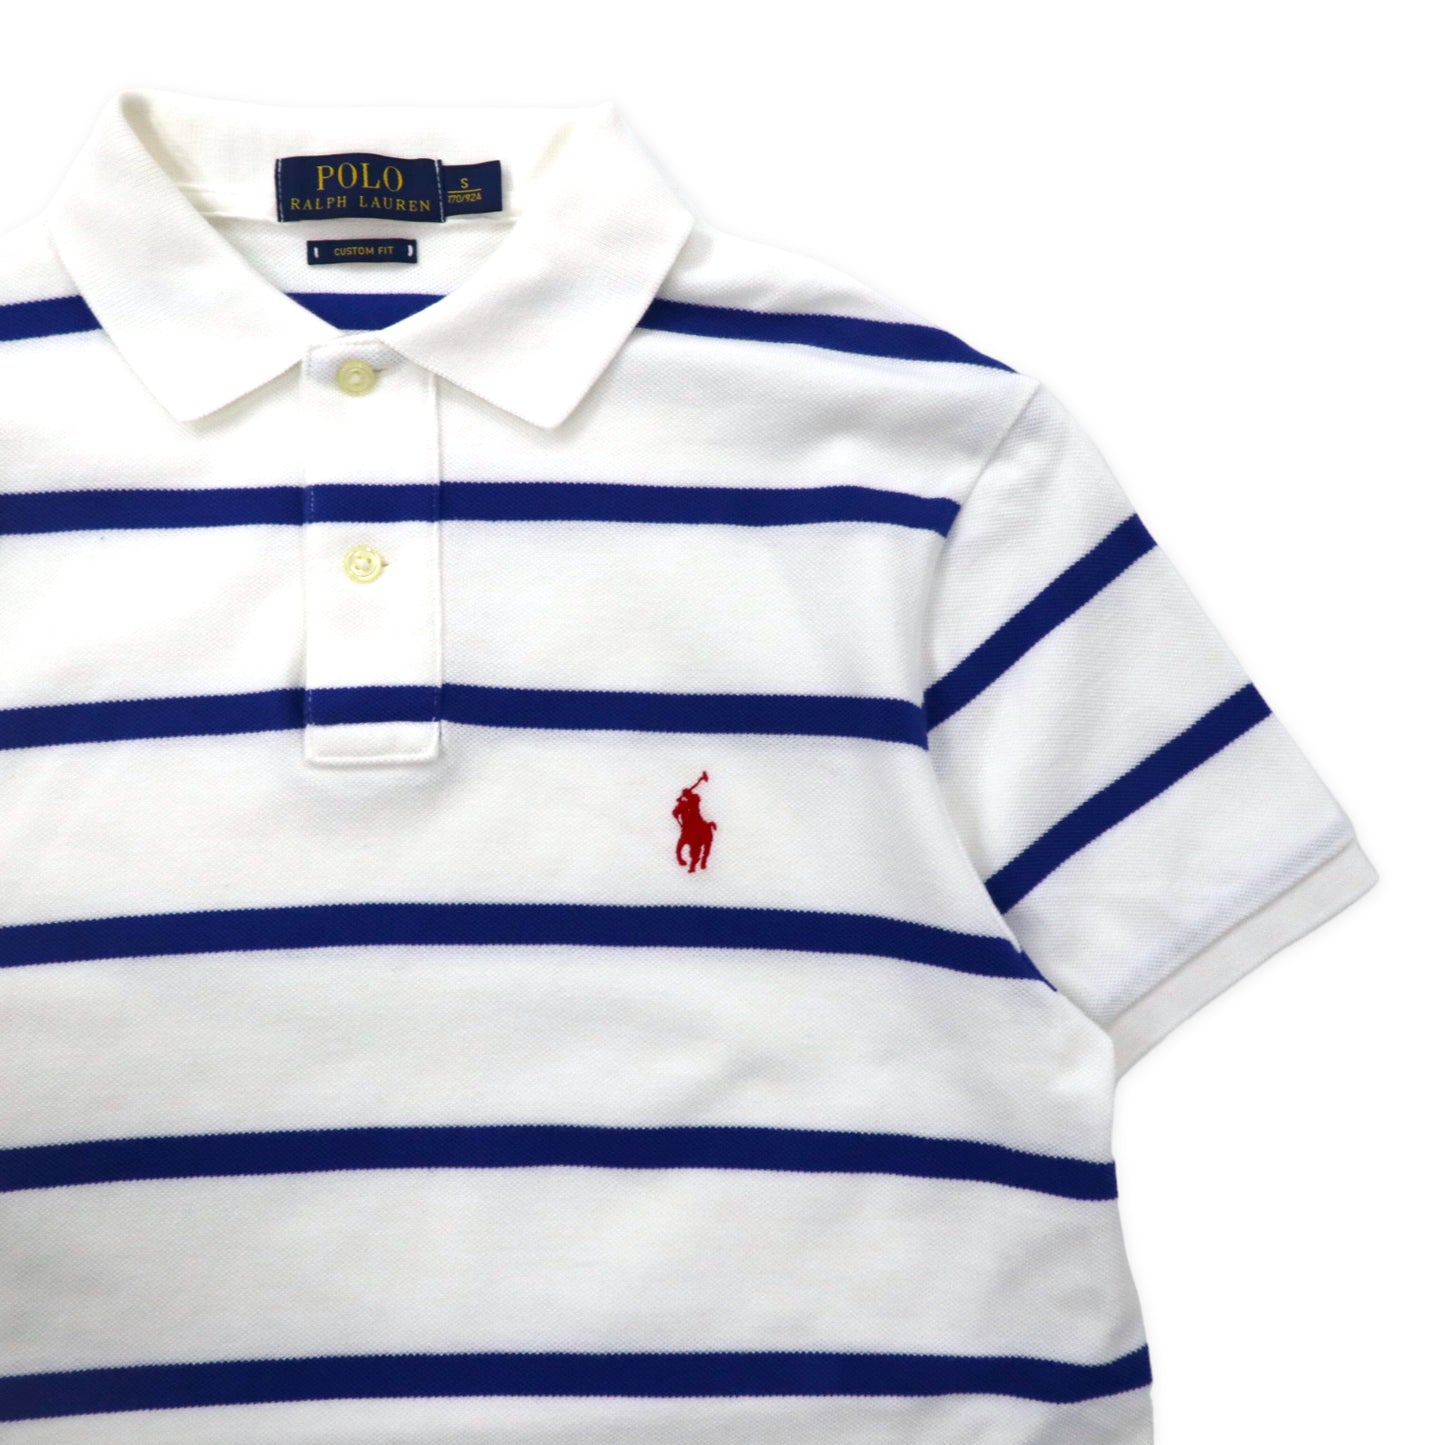 POLO RALPH LAUREN ボーダー ポロシャツ 170 ホワイト ブルー コットン スモールポニー刺繍 CUSTOM FIT